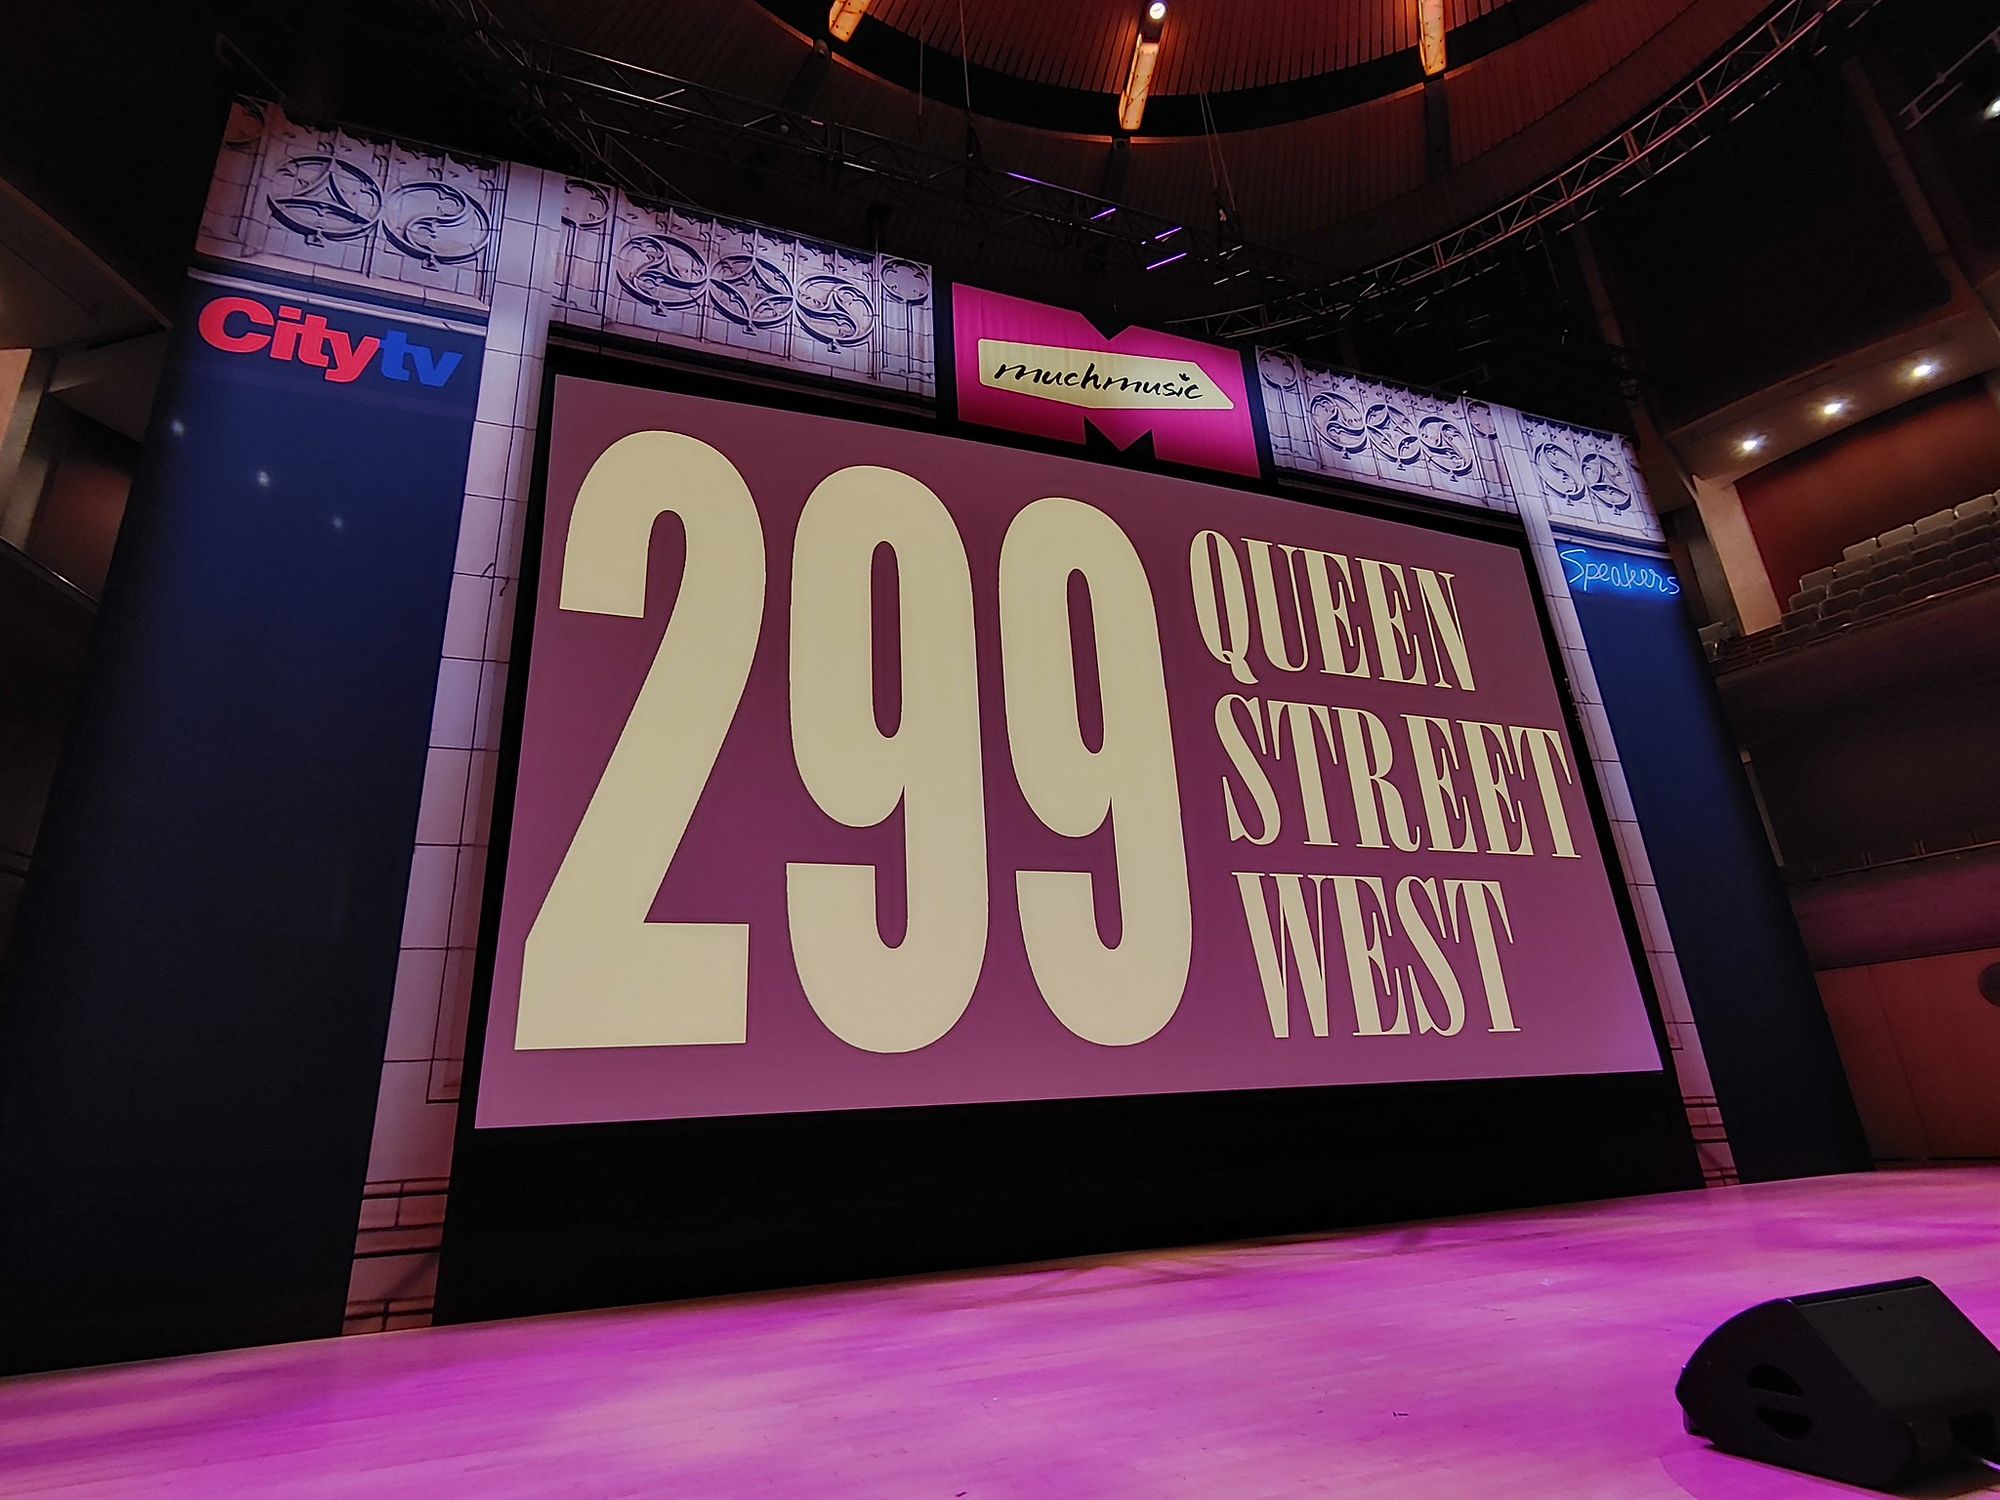 299 Queen Street West MuchMusic Documentary